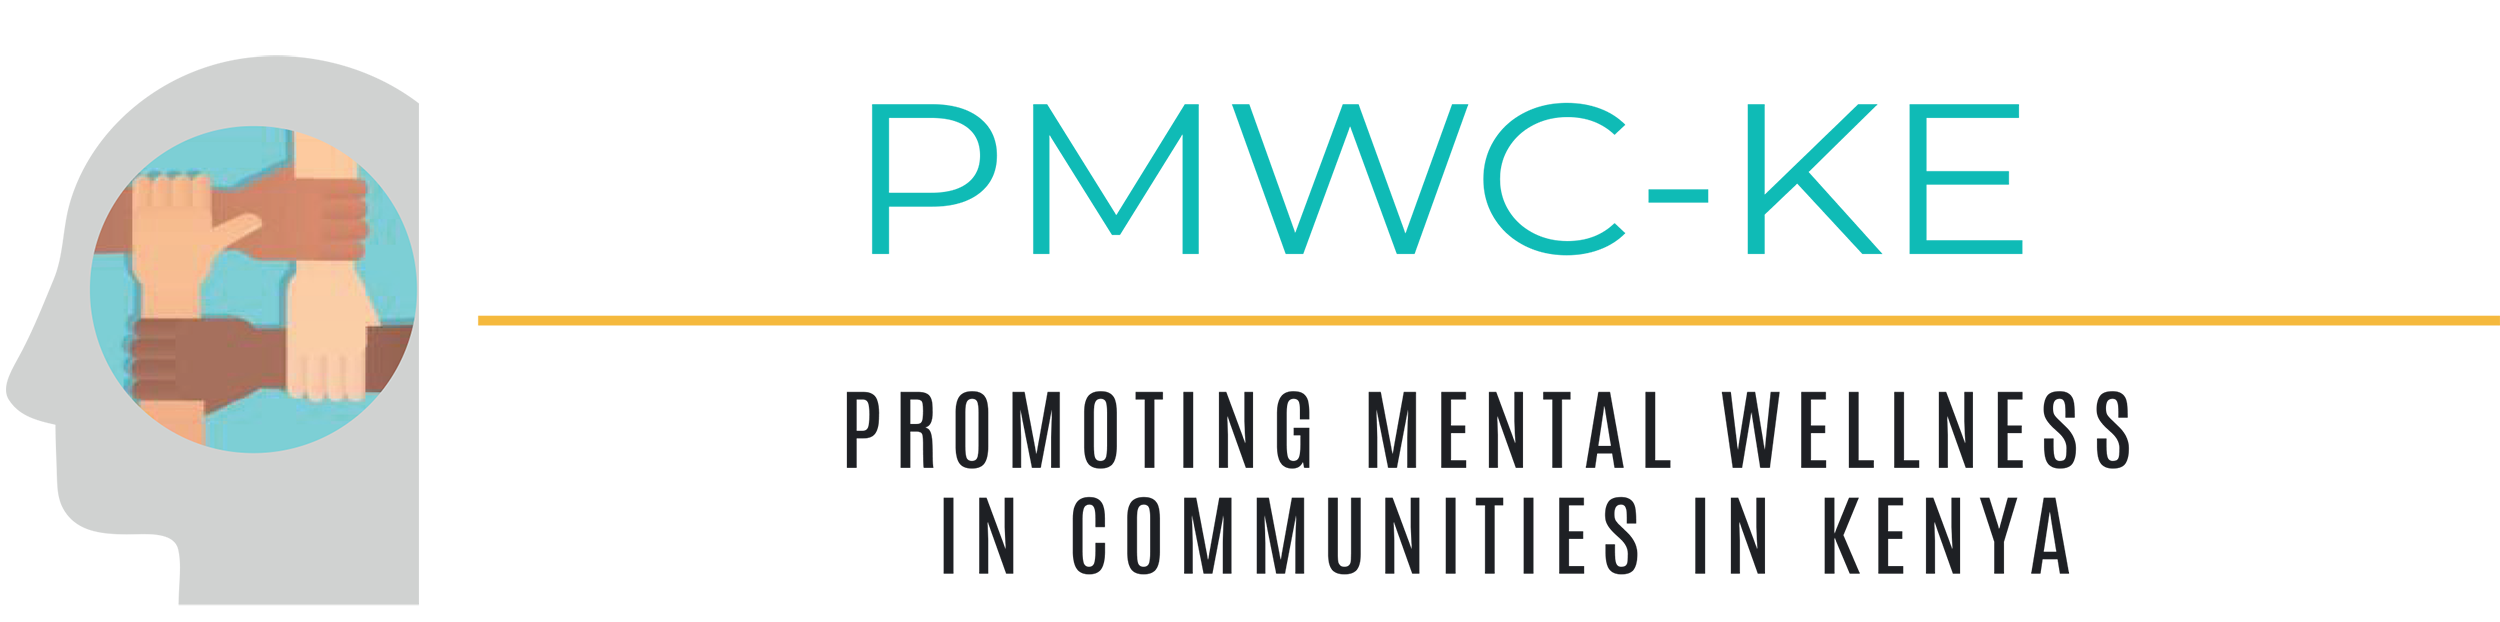 Promoting Mental Wellness in Communities in Kenya